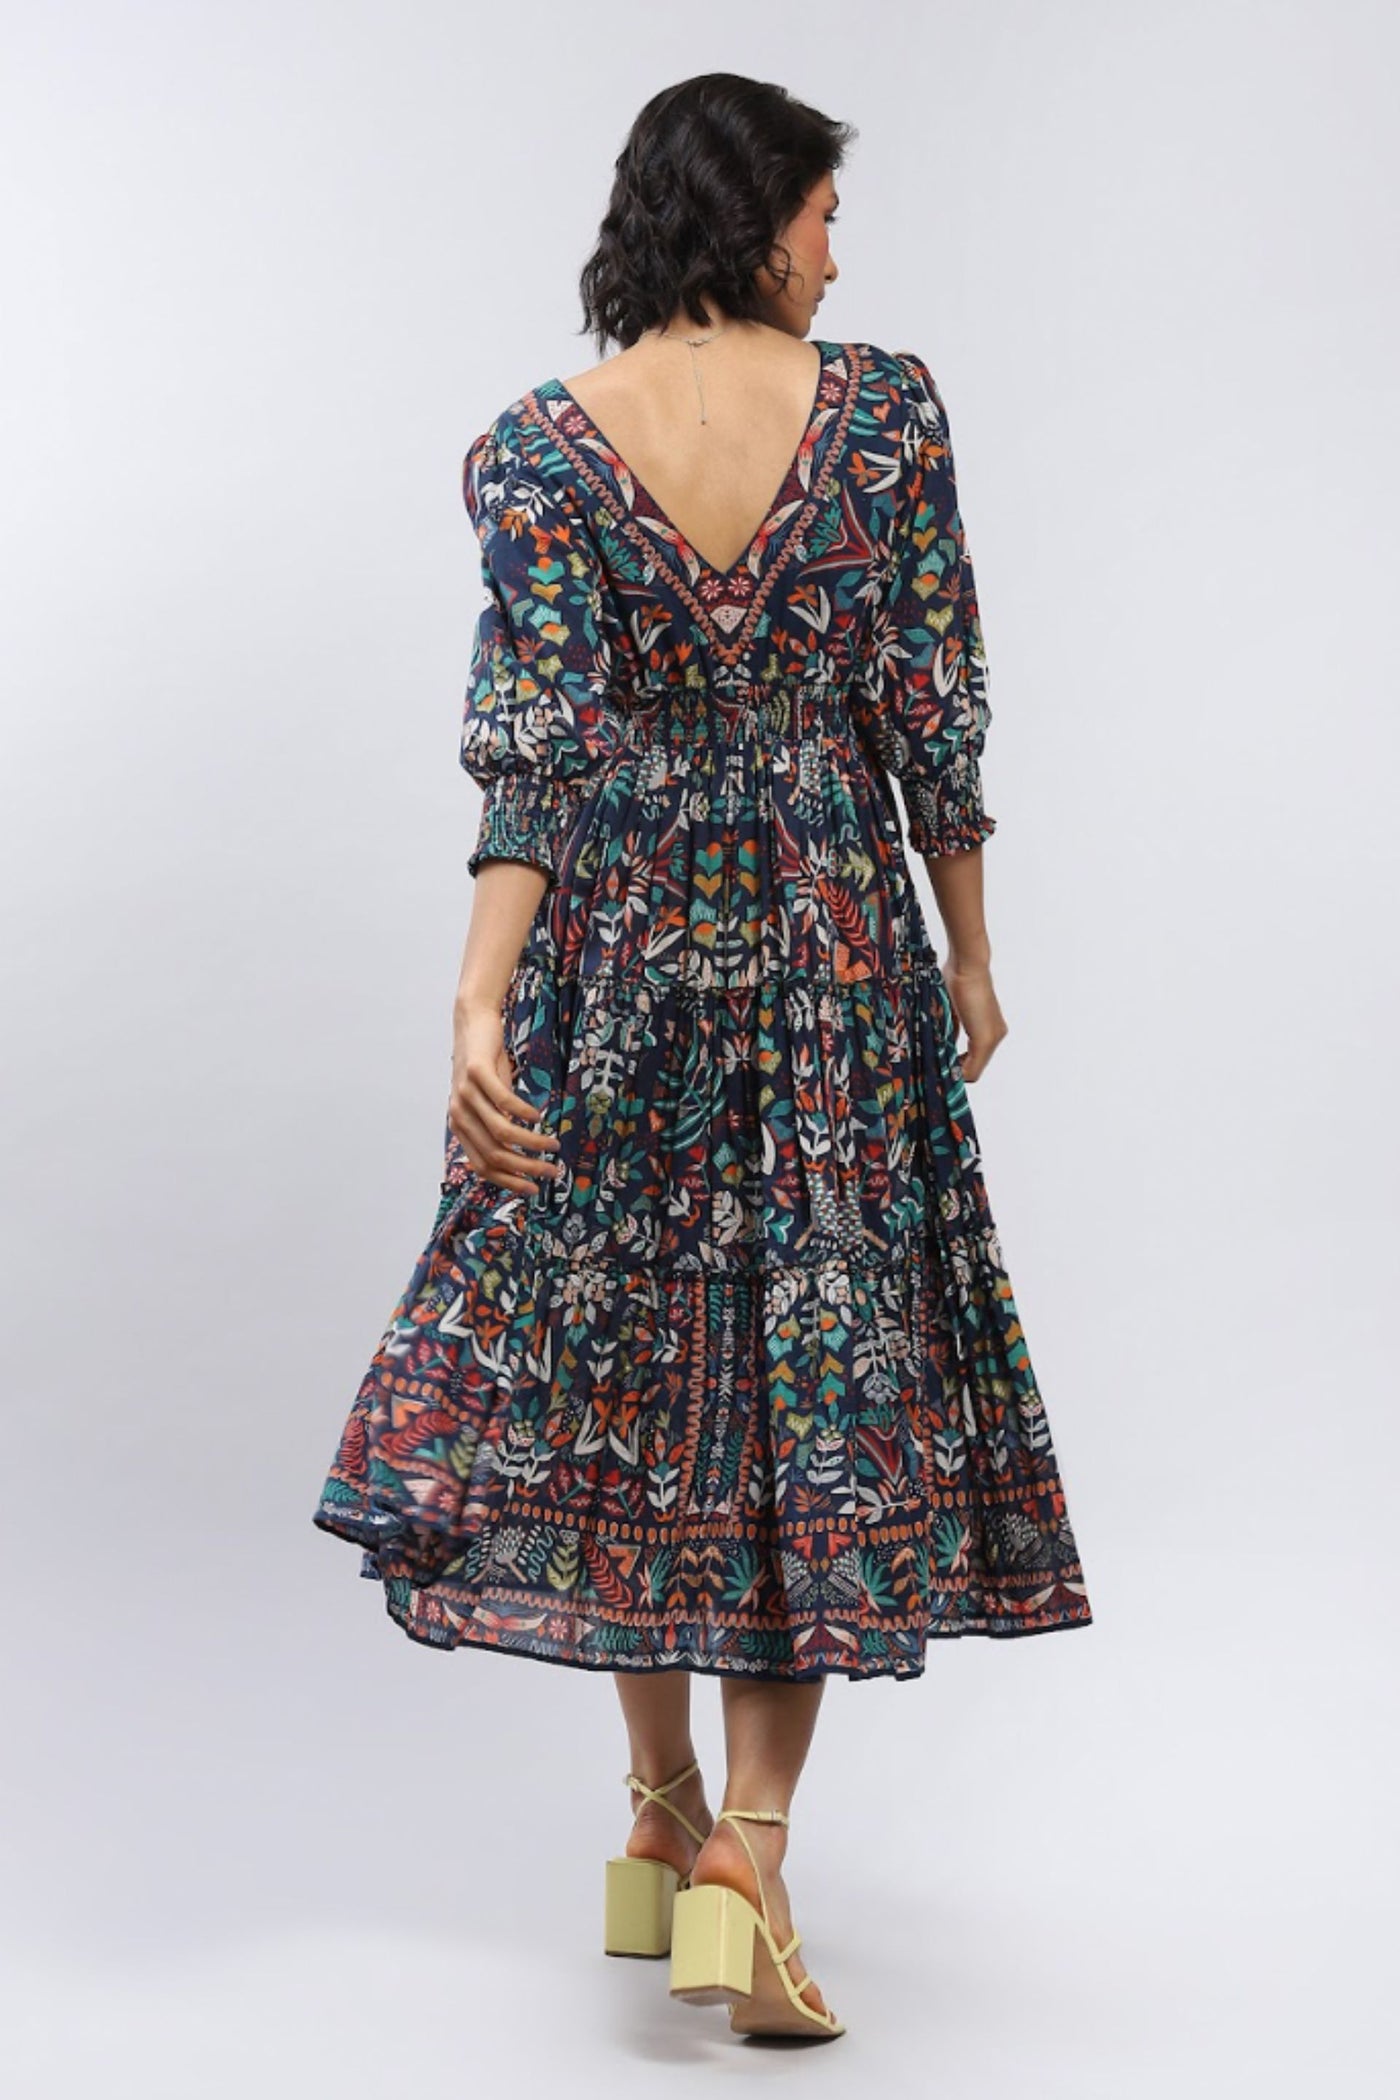 Label Ritu Kumar V Neck Half Sleeves Long Dress designer wear online shopping melange singapore